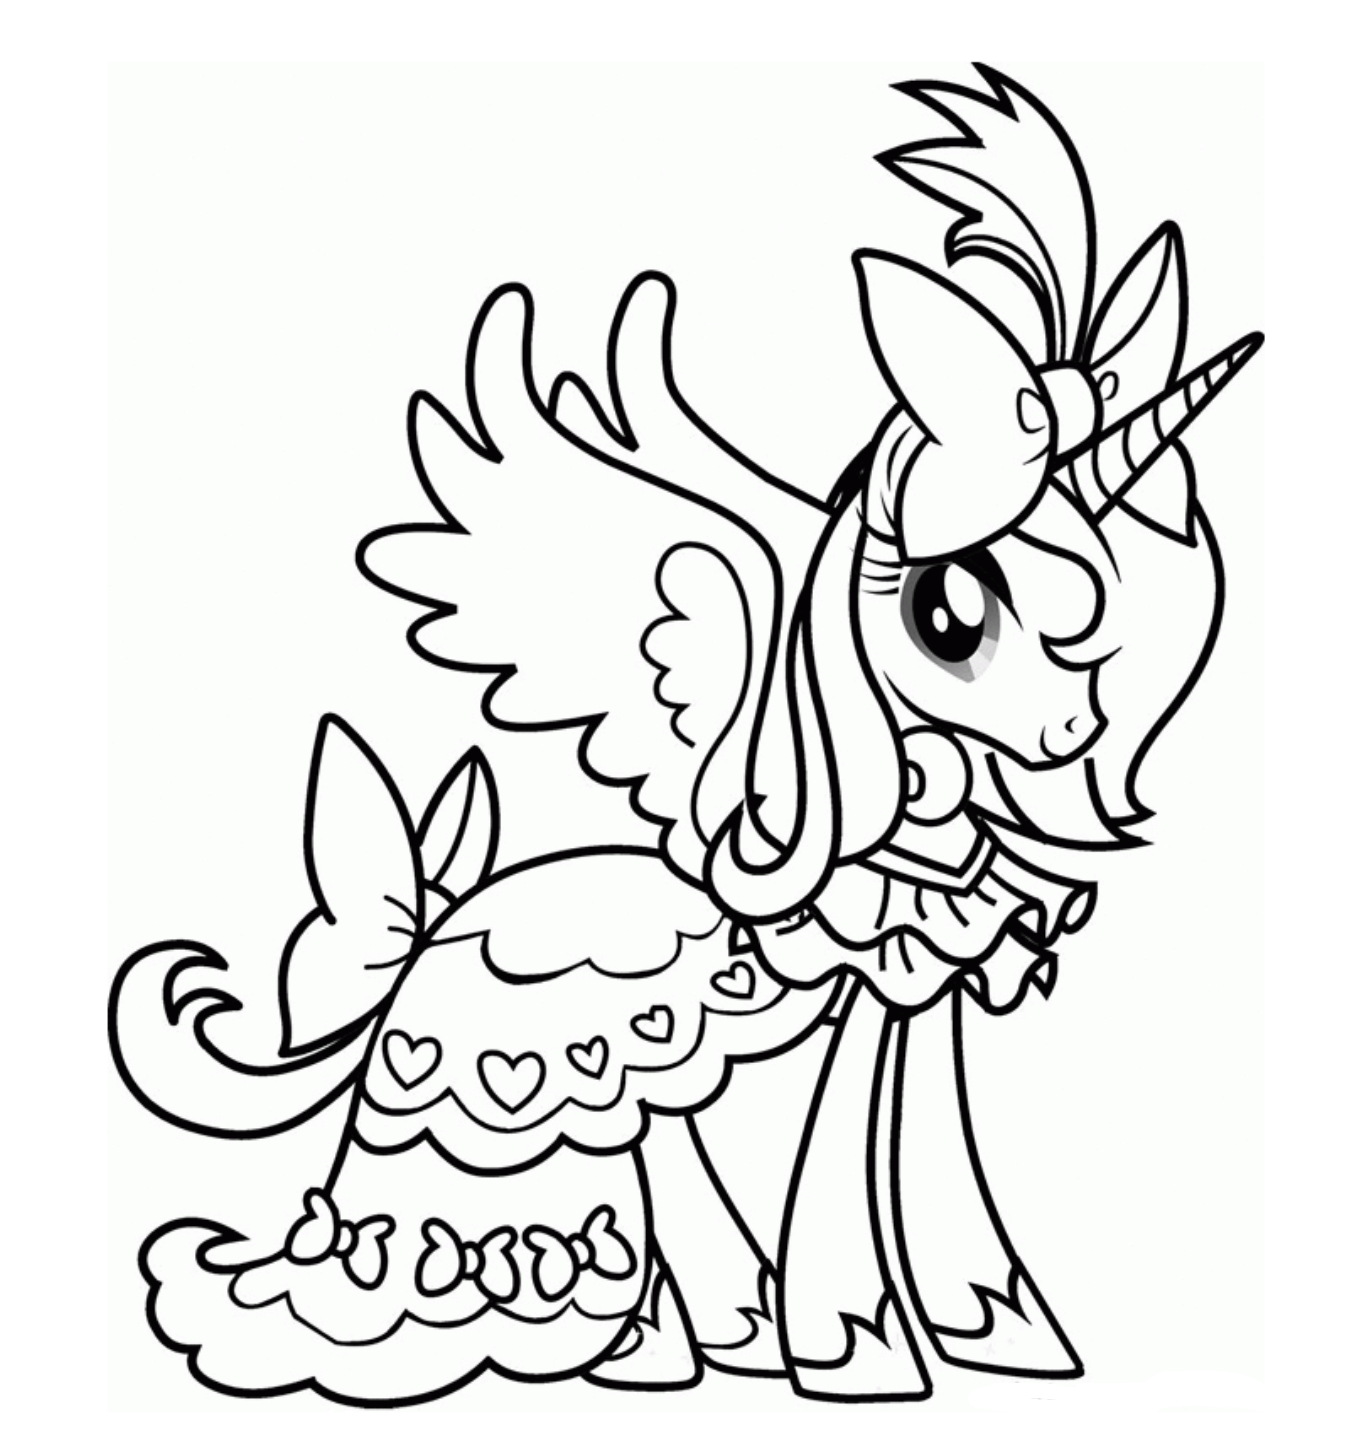 Tranh tô màu Pony với đôi cánh thiên thần đáng yêu 3